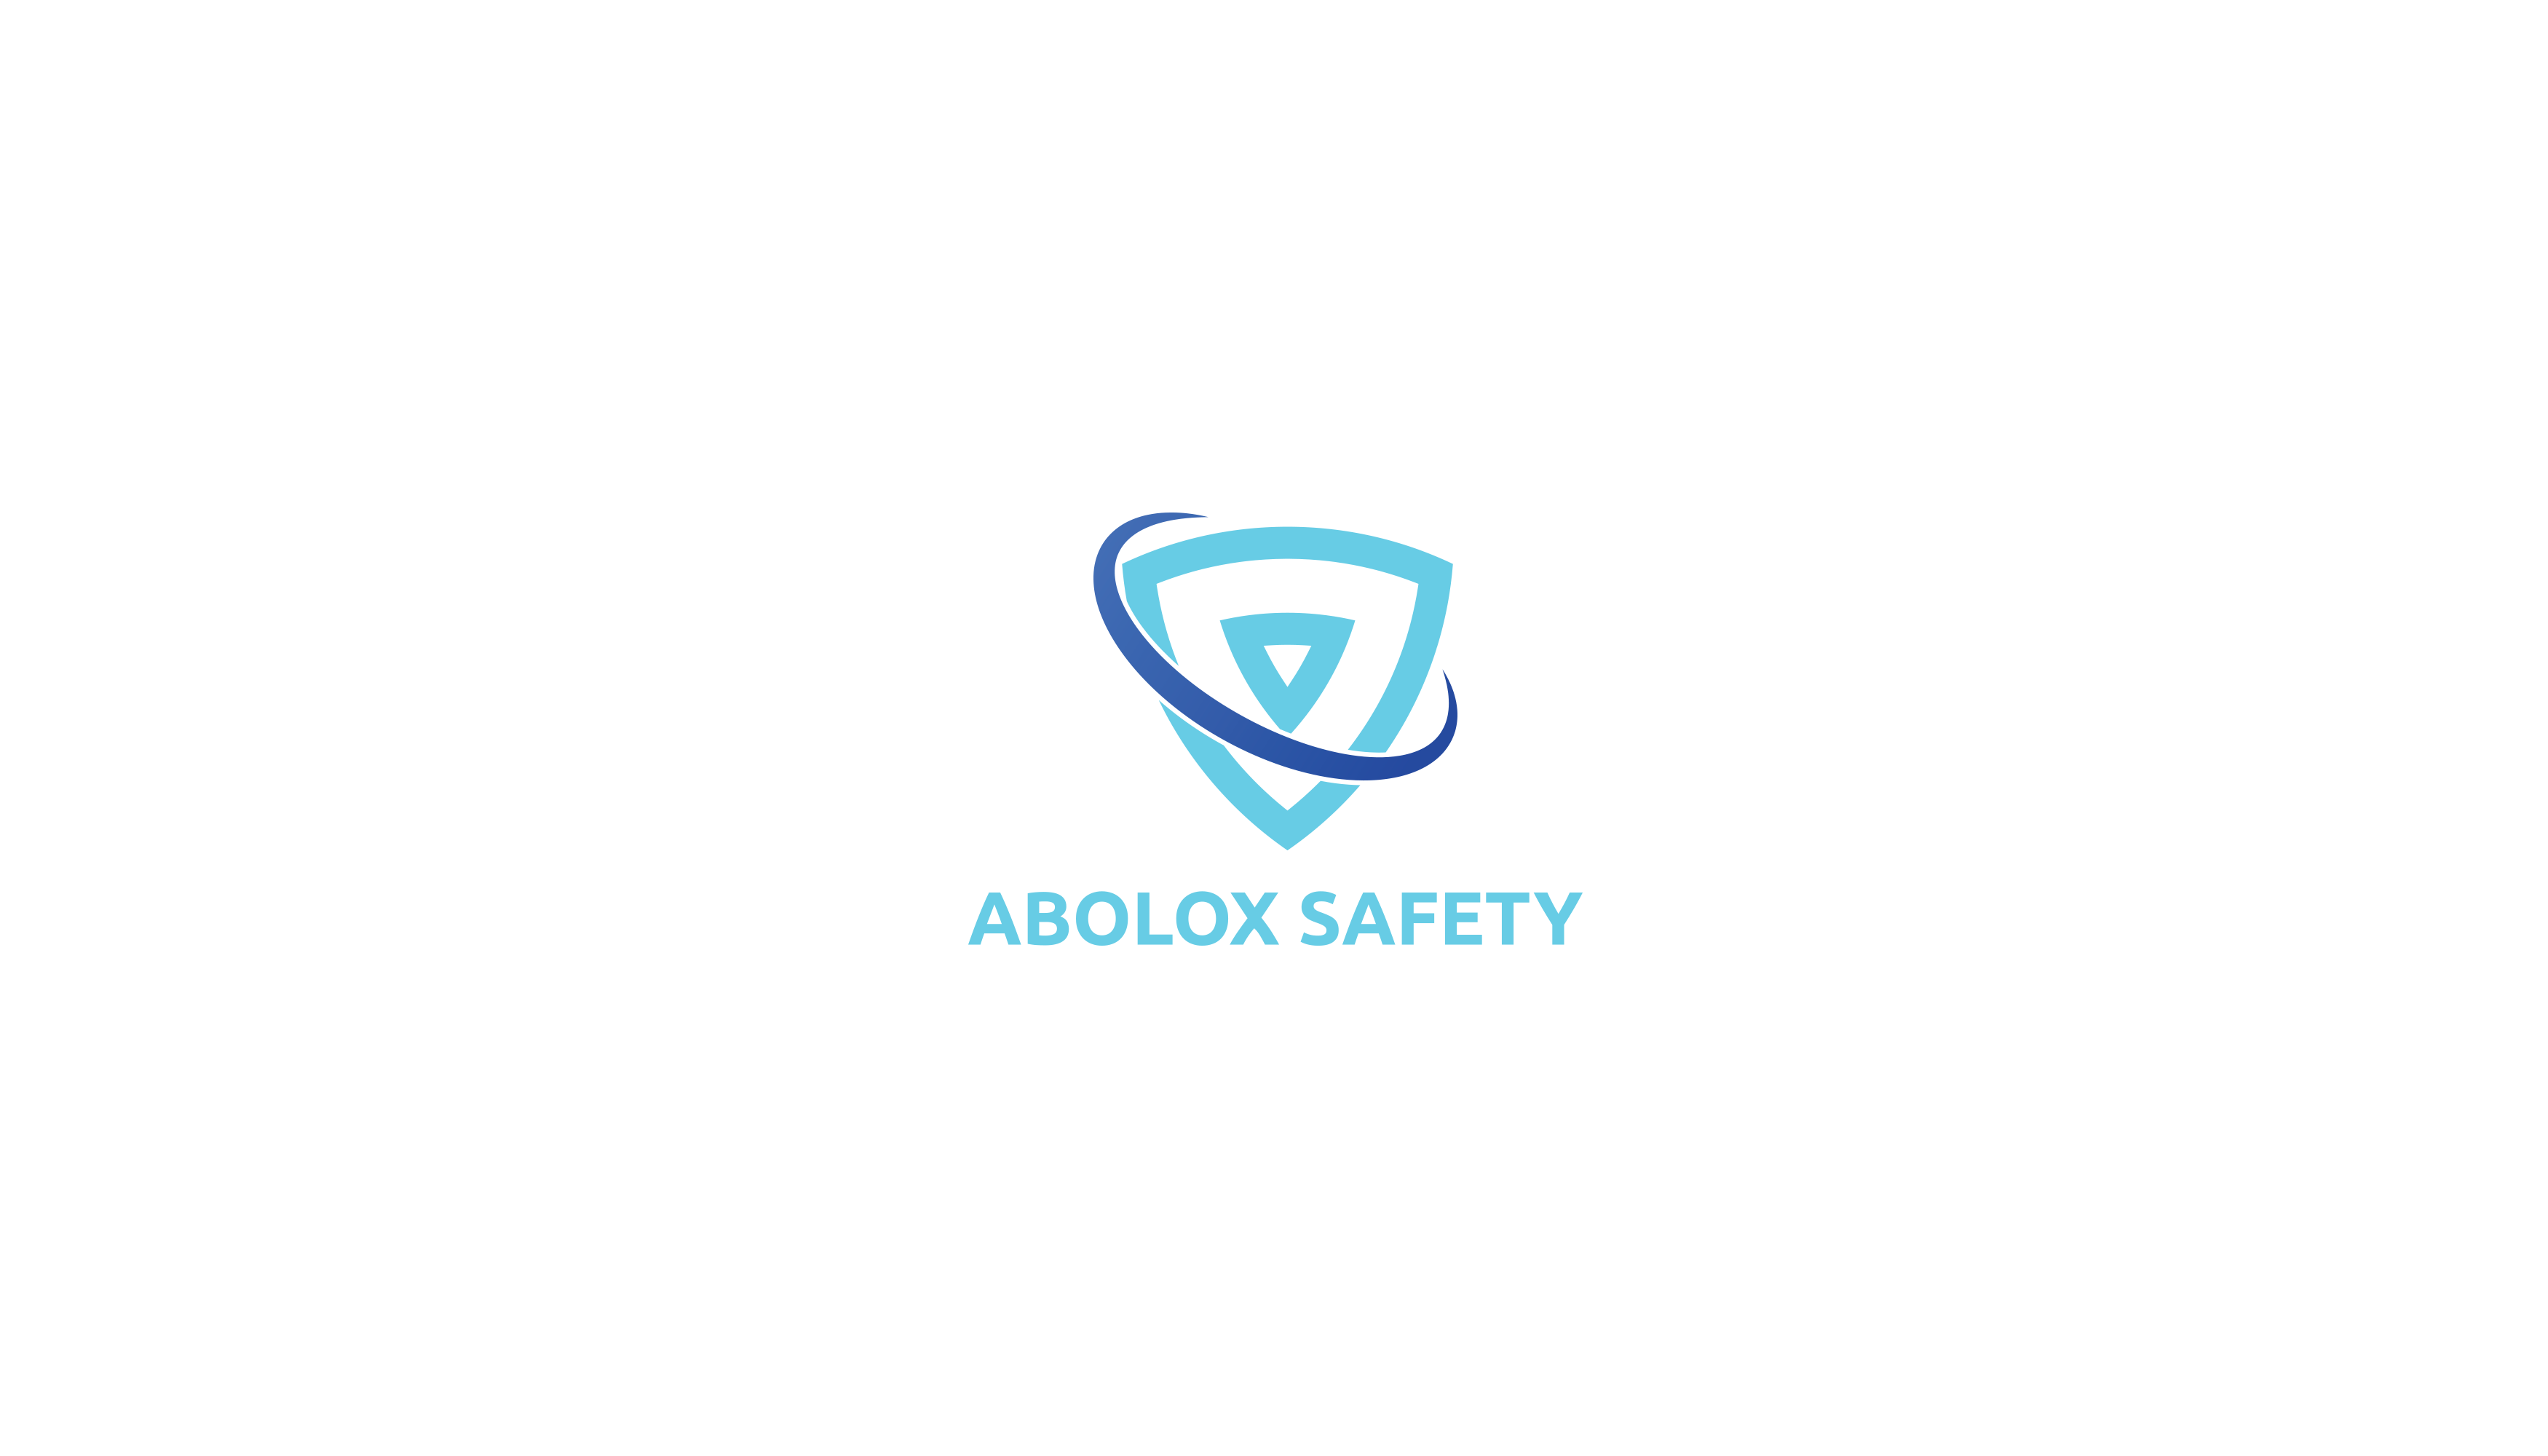 Abolox Safety Design #1